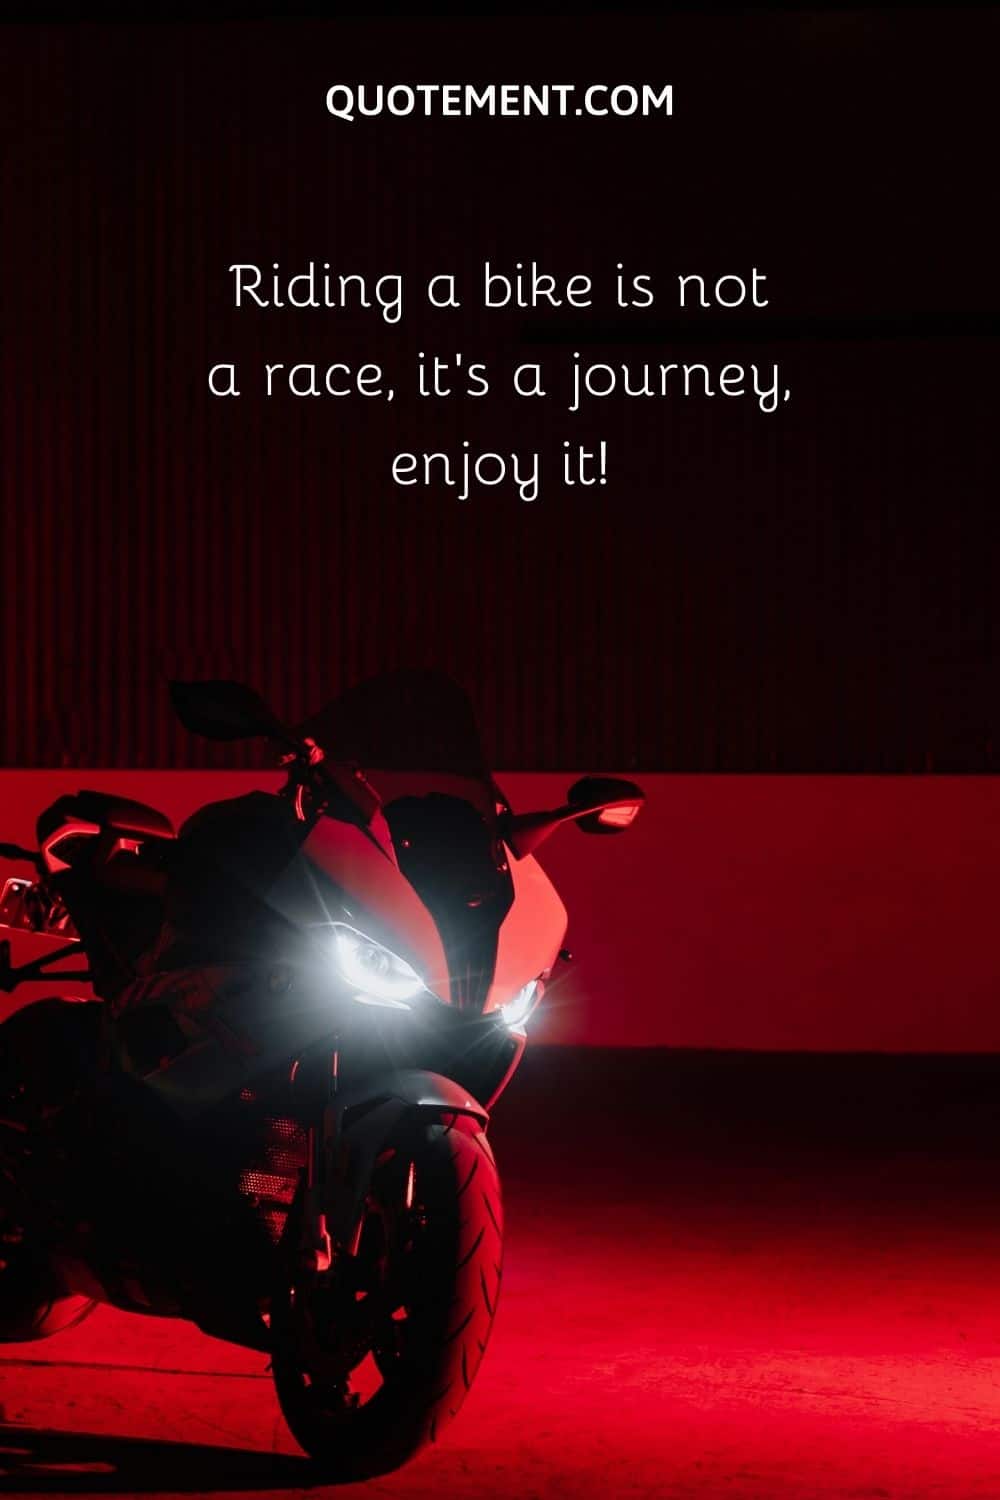 Riding a bike is not a race, it’s a journey, enjoy it!